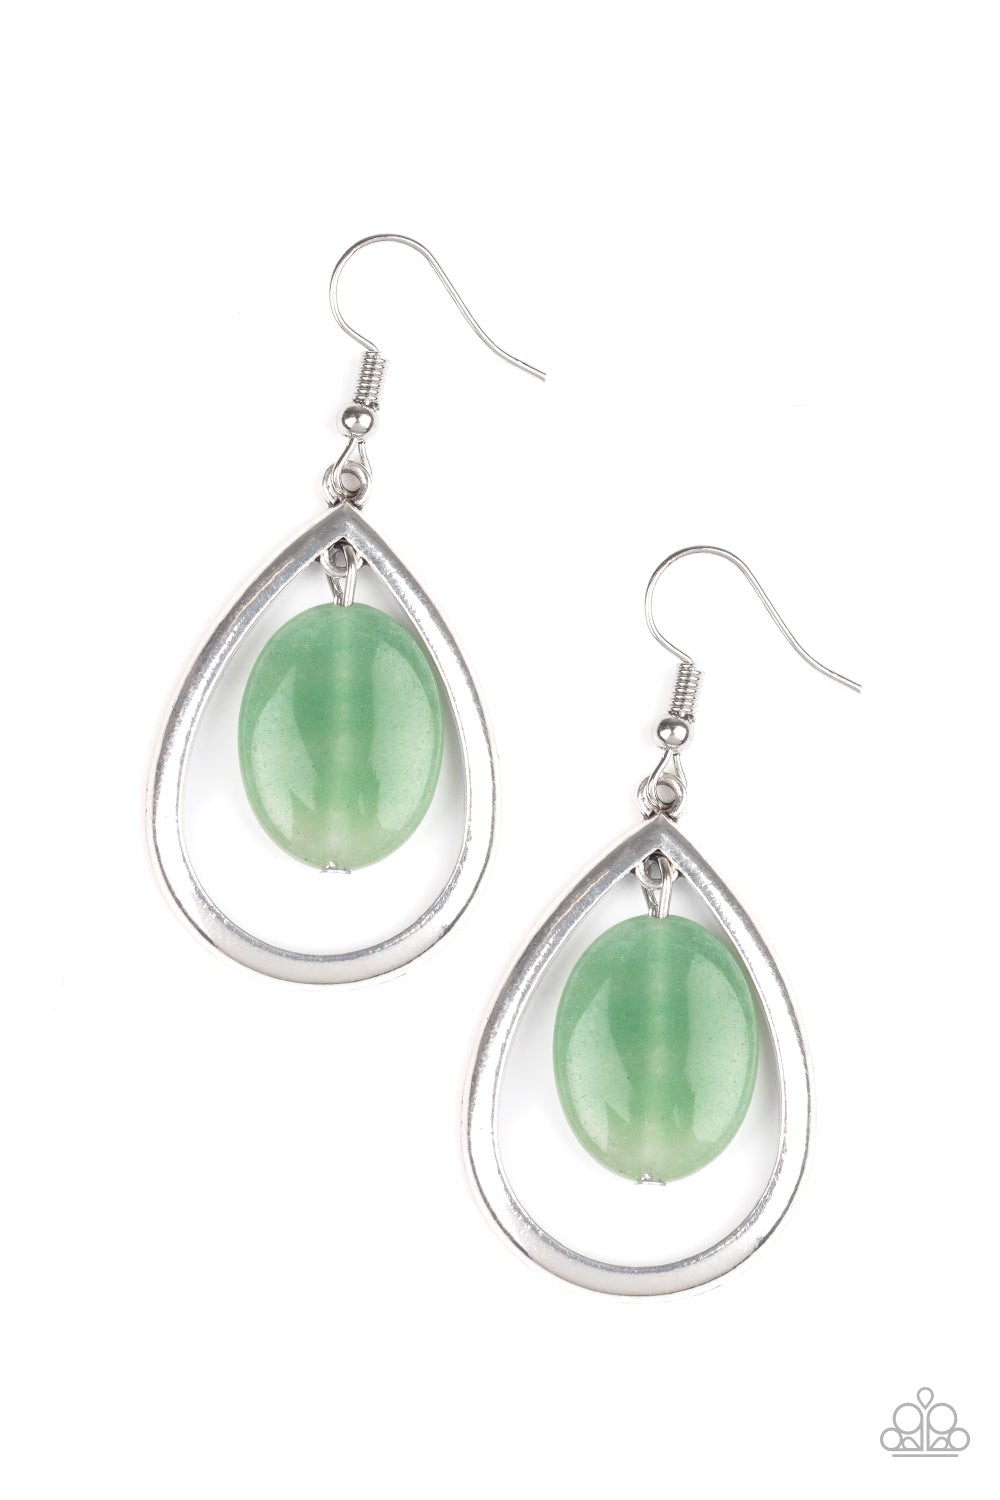 Seasonal Simplicity - Green Earrings